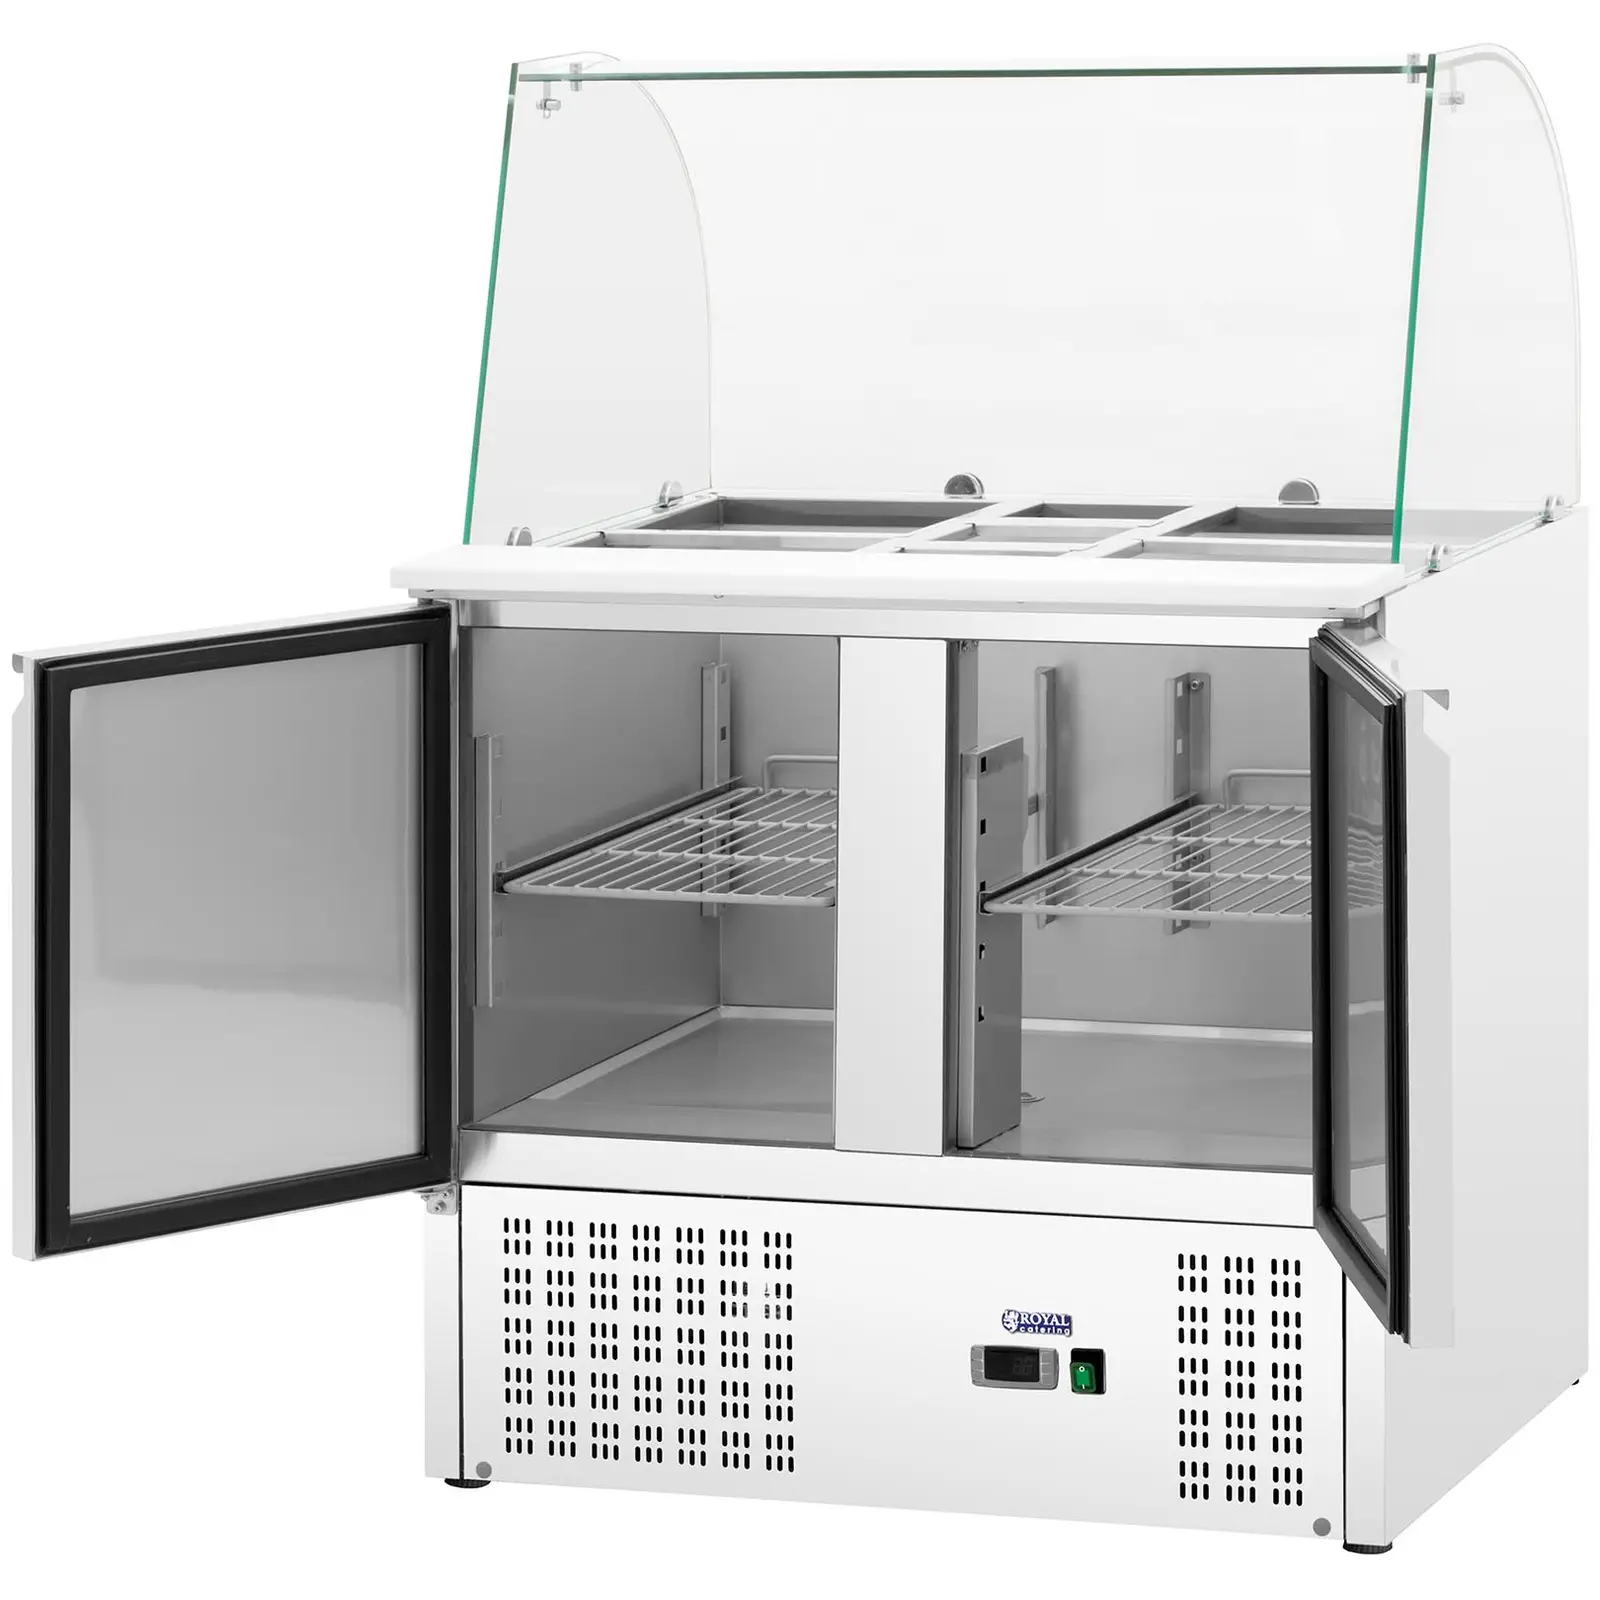 Bajomostrador refrigerado - con cubierta de vidrio - Royal Catering - 240 L - para 7 contenedores GN - 91 x 70 cm